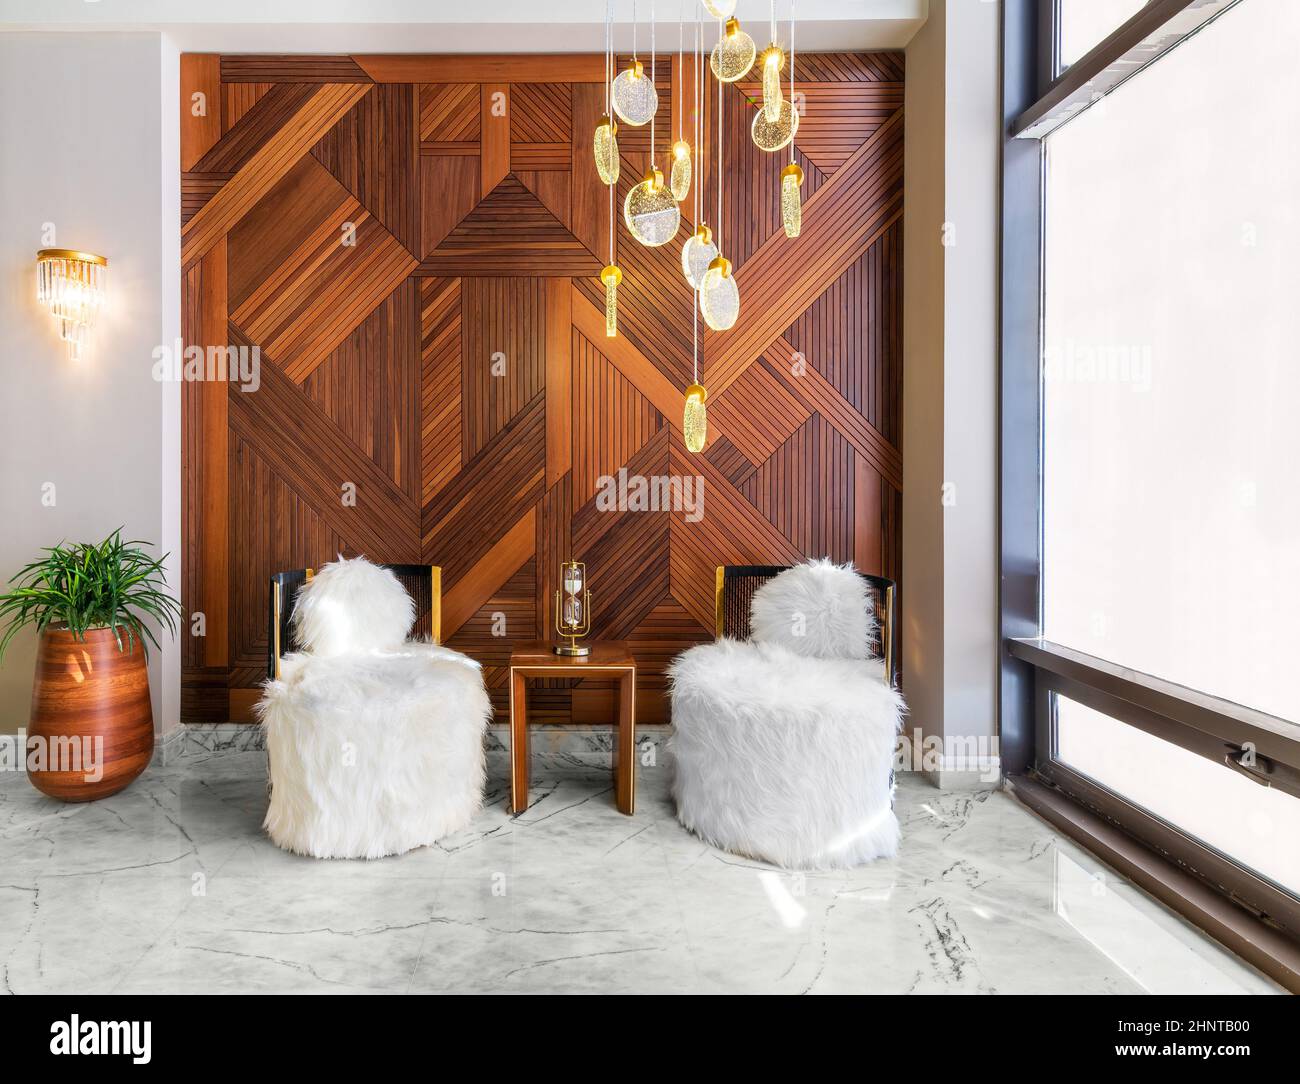 Due moderne sedie senza braccioli in piuma bianca, un tavolino moderno in legno, una pentola e una parete decorata in legno rivestito Foto Stock